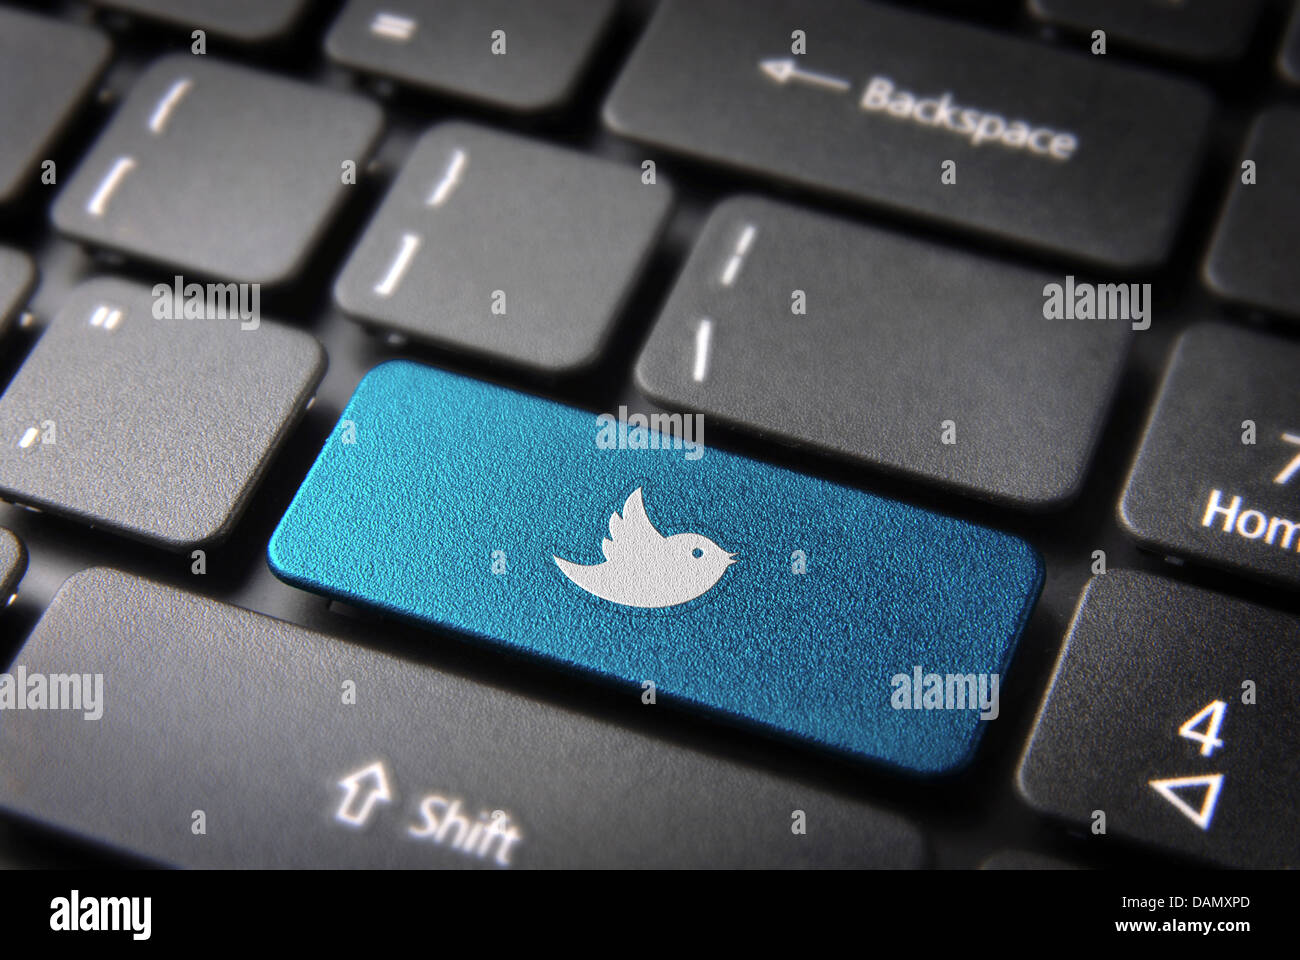 Socialmedia chiave con twitter bird icona sulla tastiera del notebook. Incluso percorso di clipping, così puoi modificare facilmente. Foto Stock